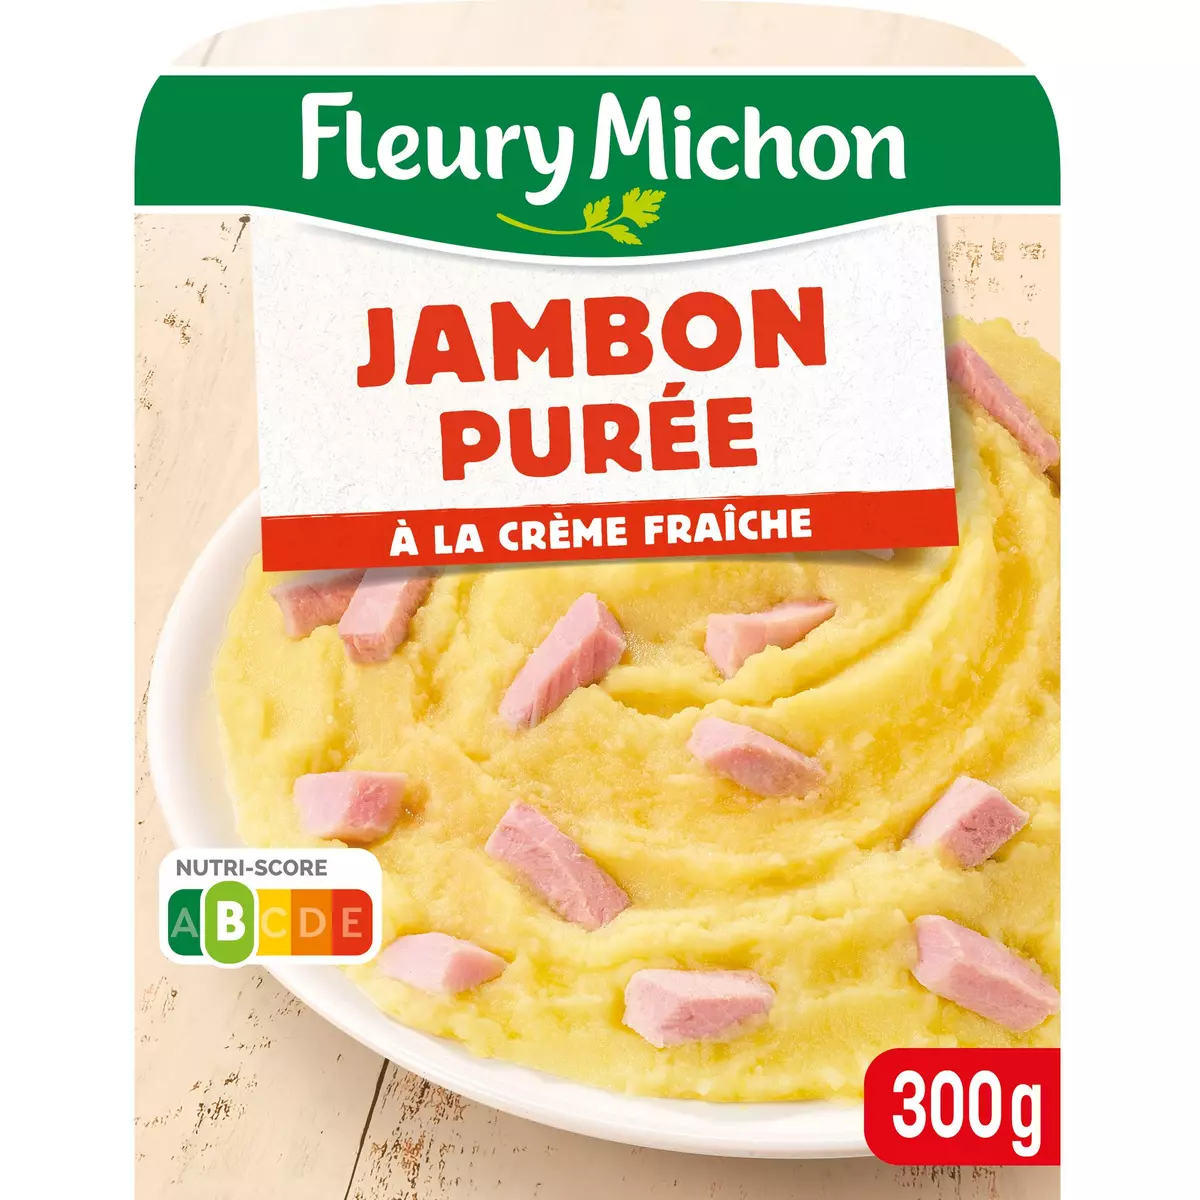 FLEURY MICHON Jambon purée à la crème fraîche 1 portion 300g